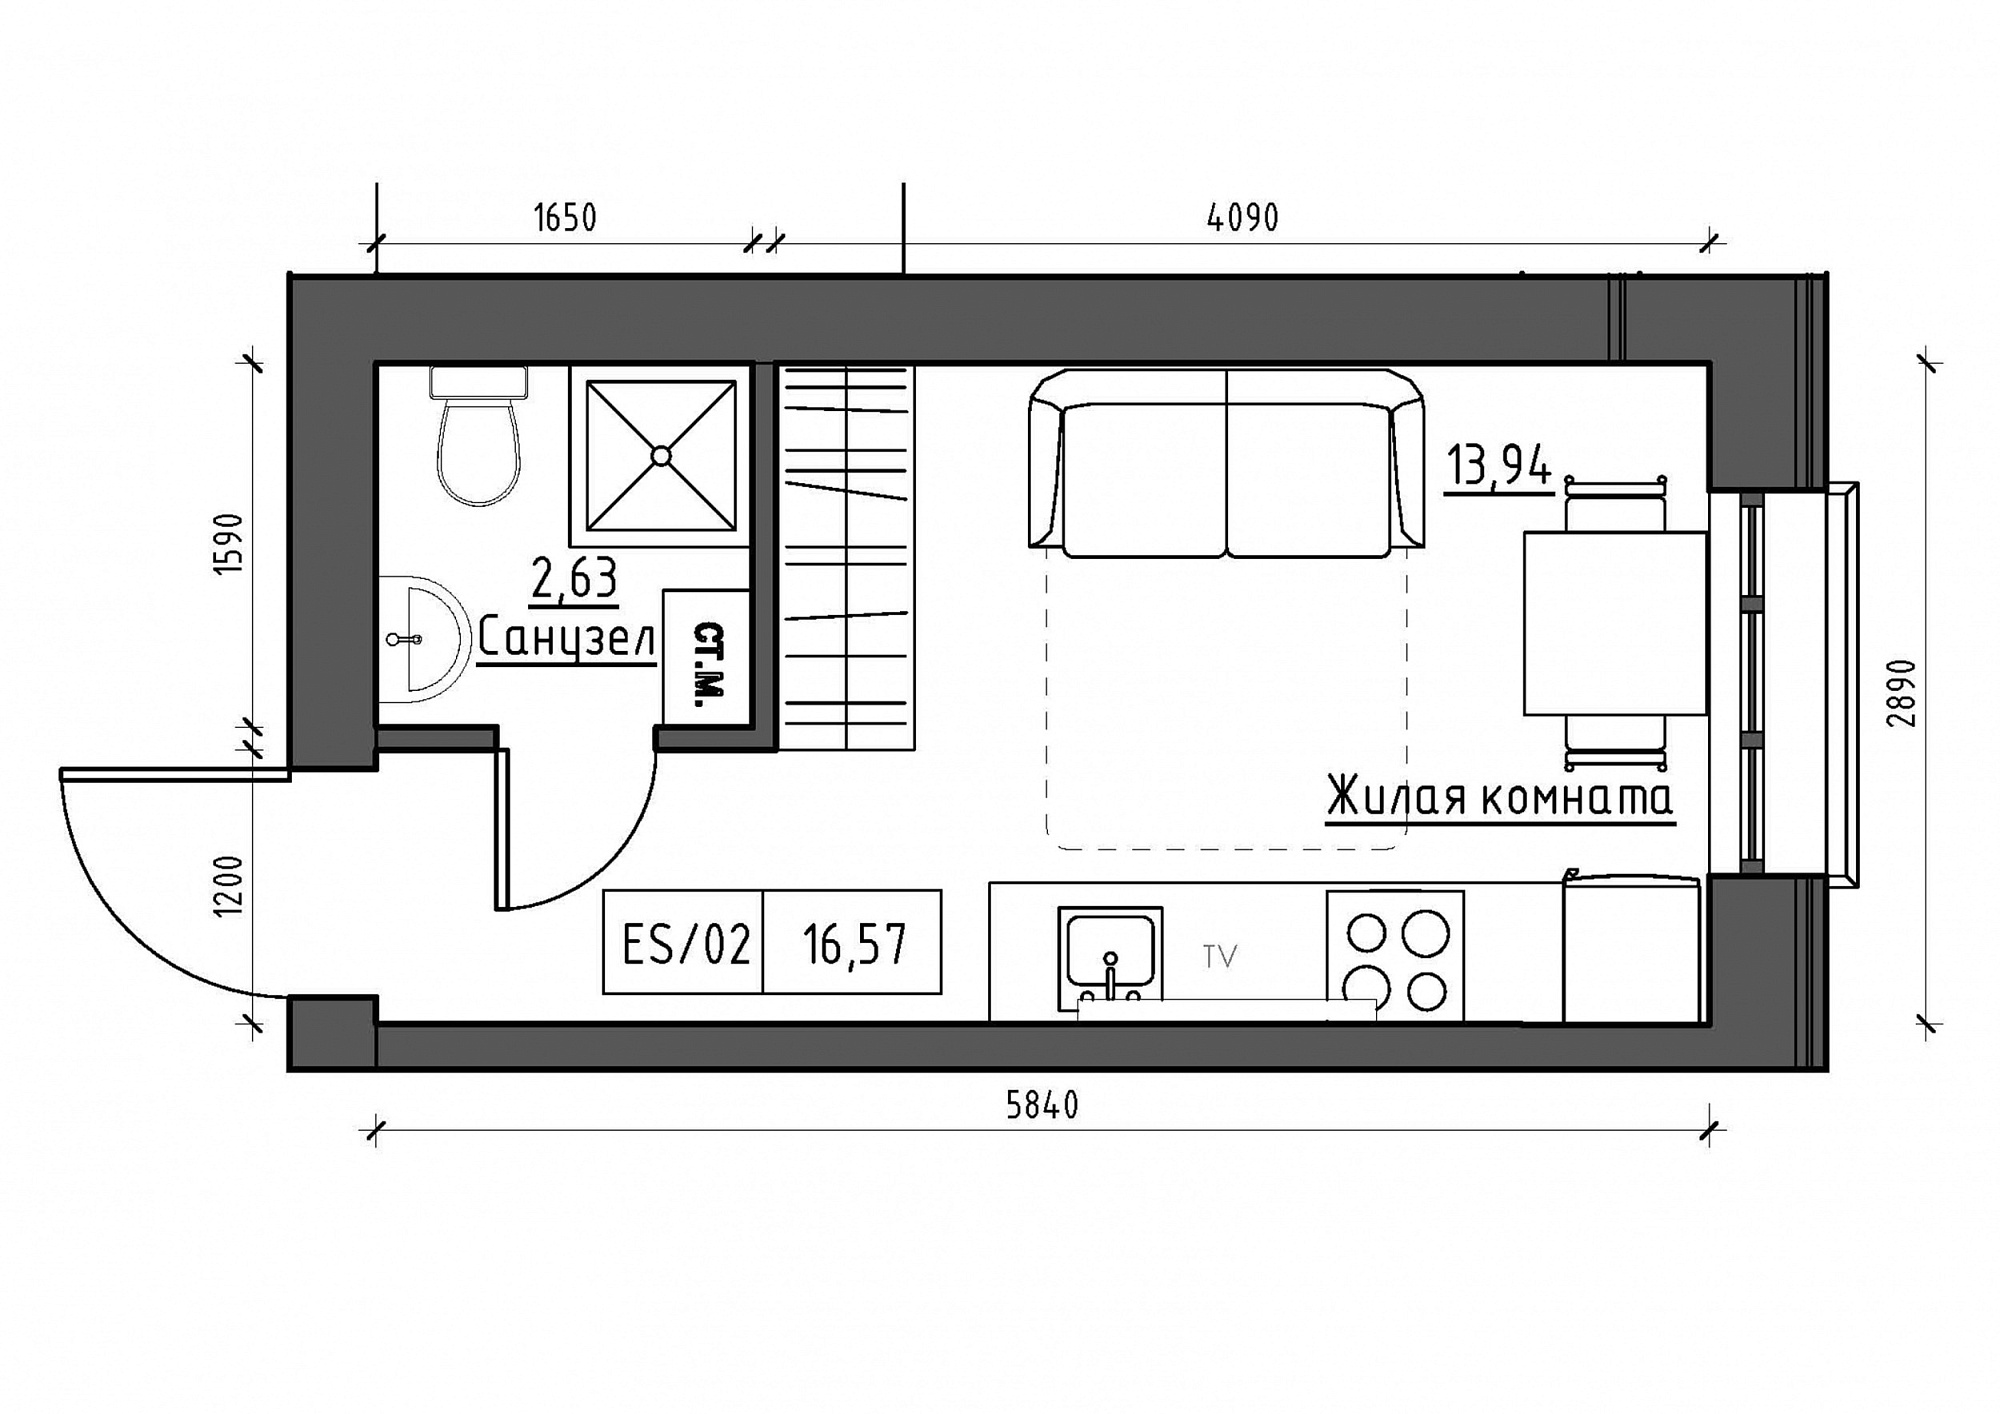 Планування Smart-квартира площею 16.57м2, KS-011-02/0005.